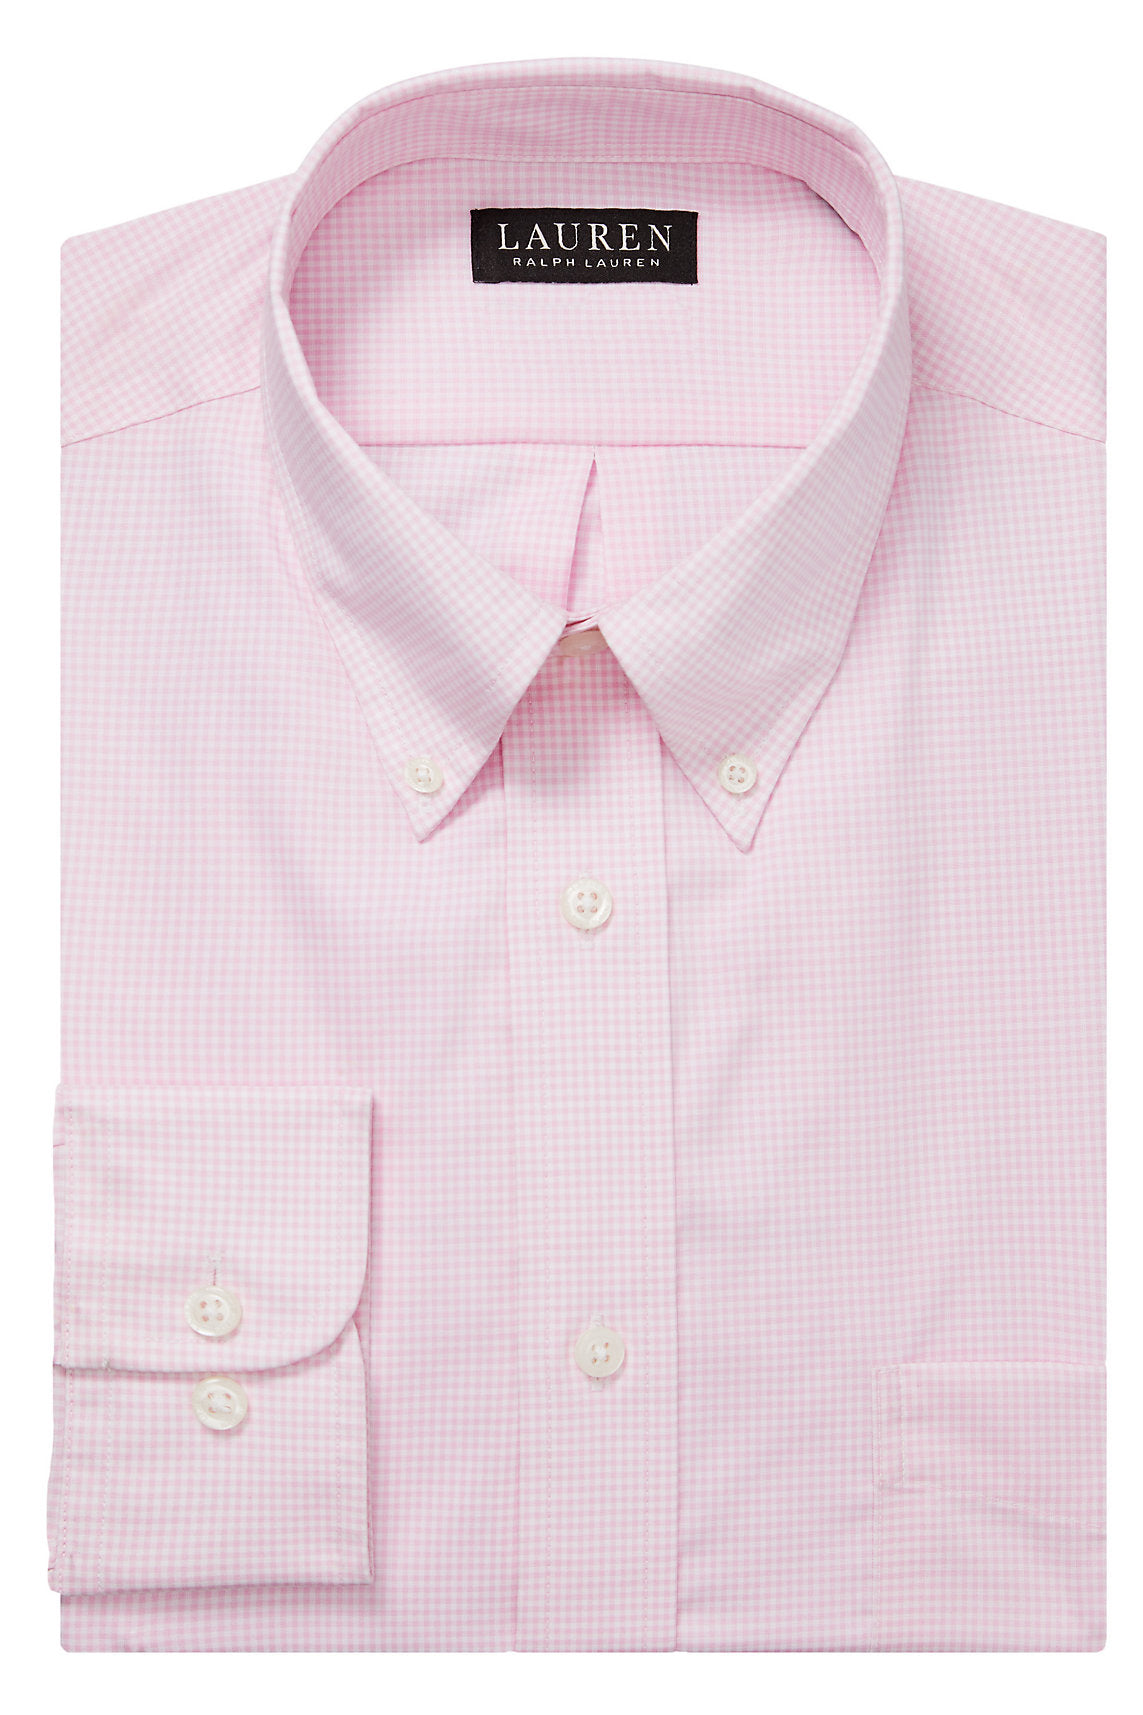 Lauren Ralph Lauren Pink Gingham Check Button-down Collar Dress Shirt